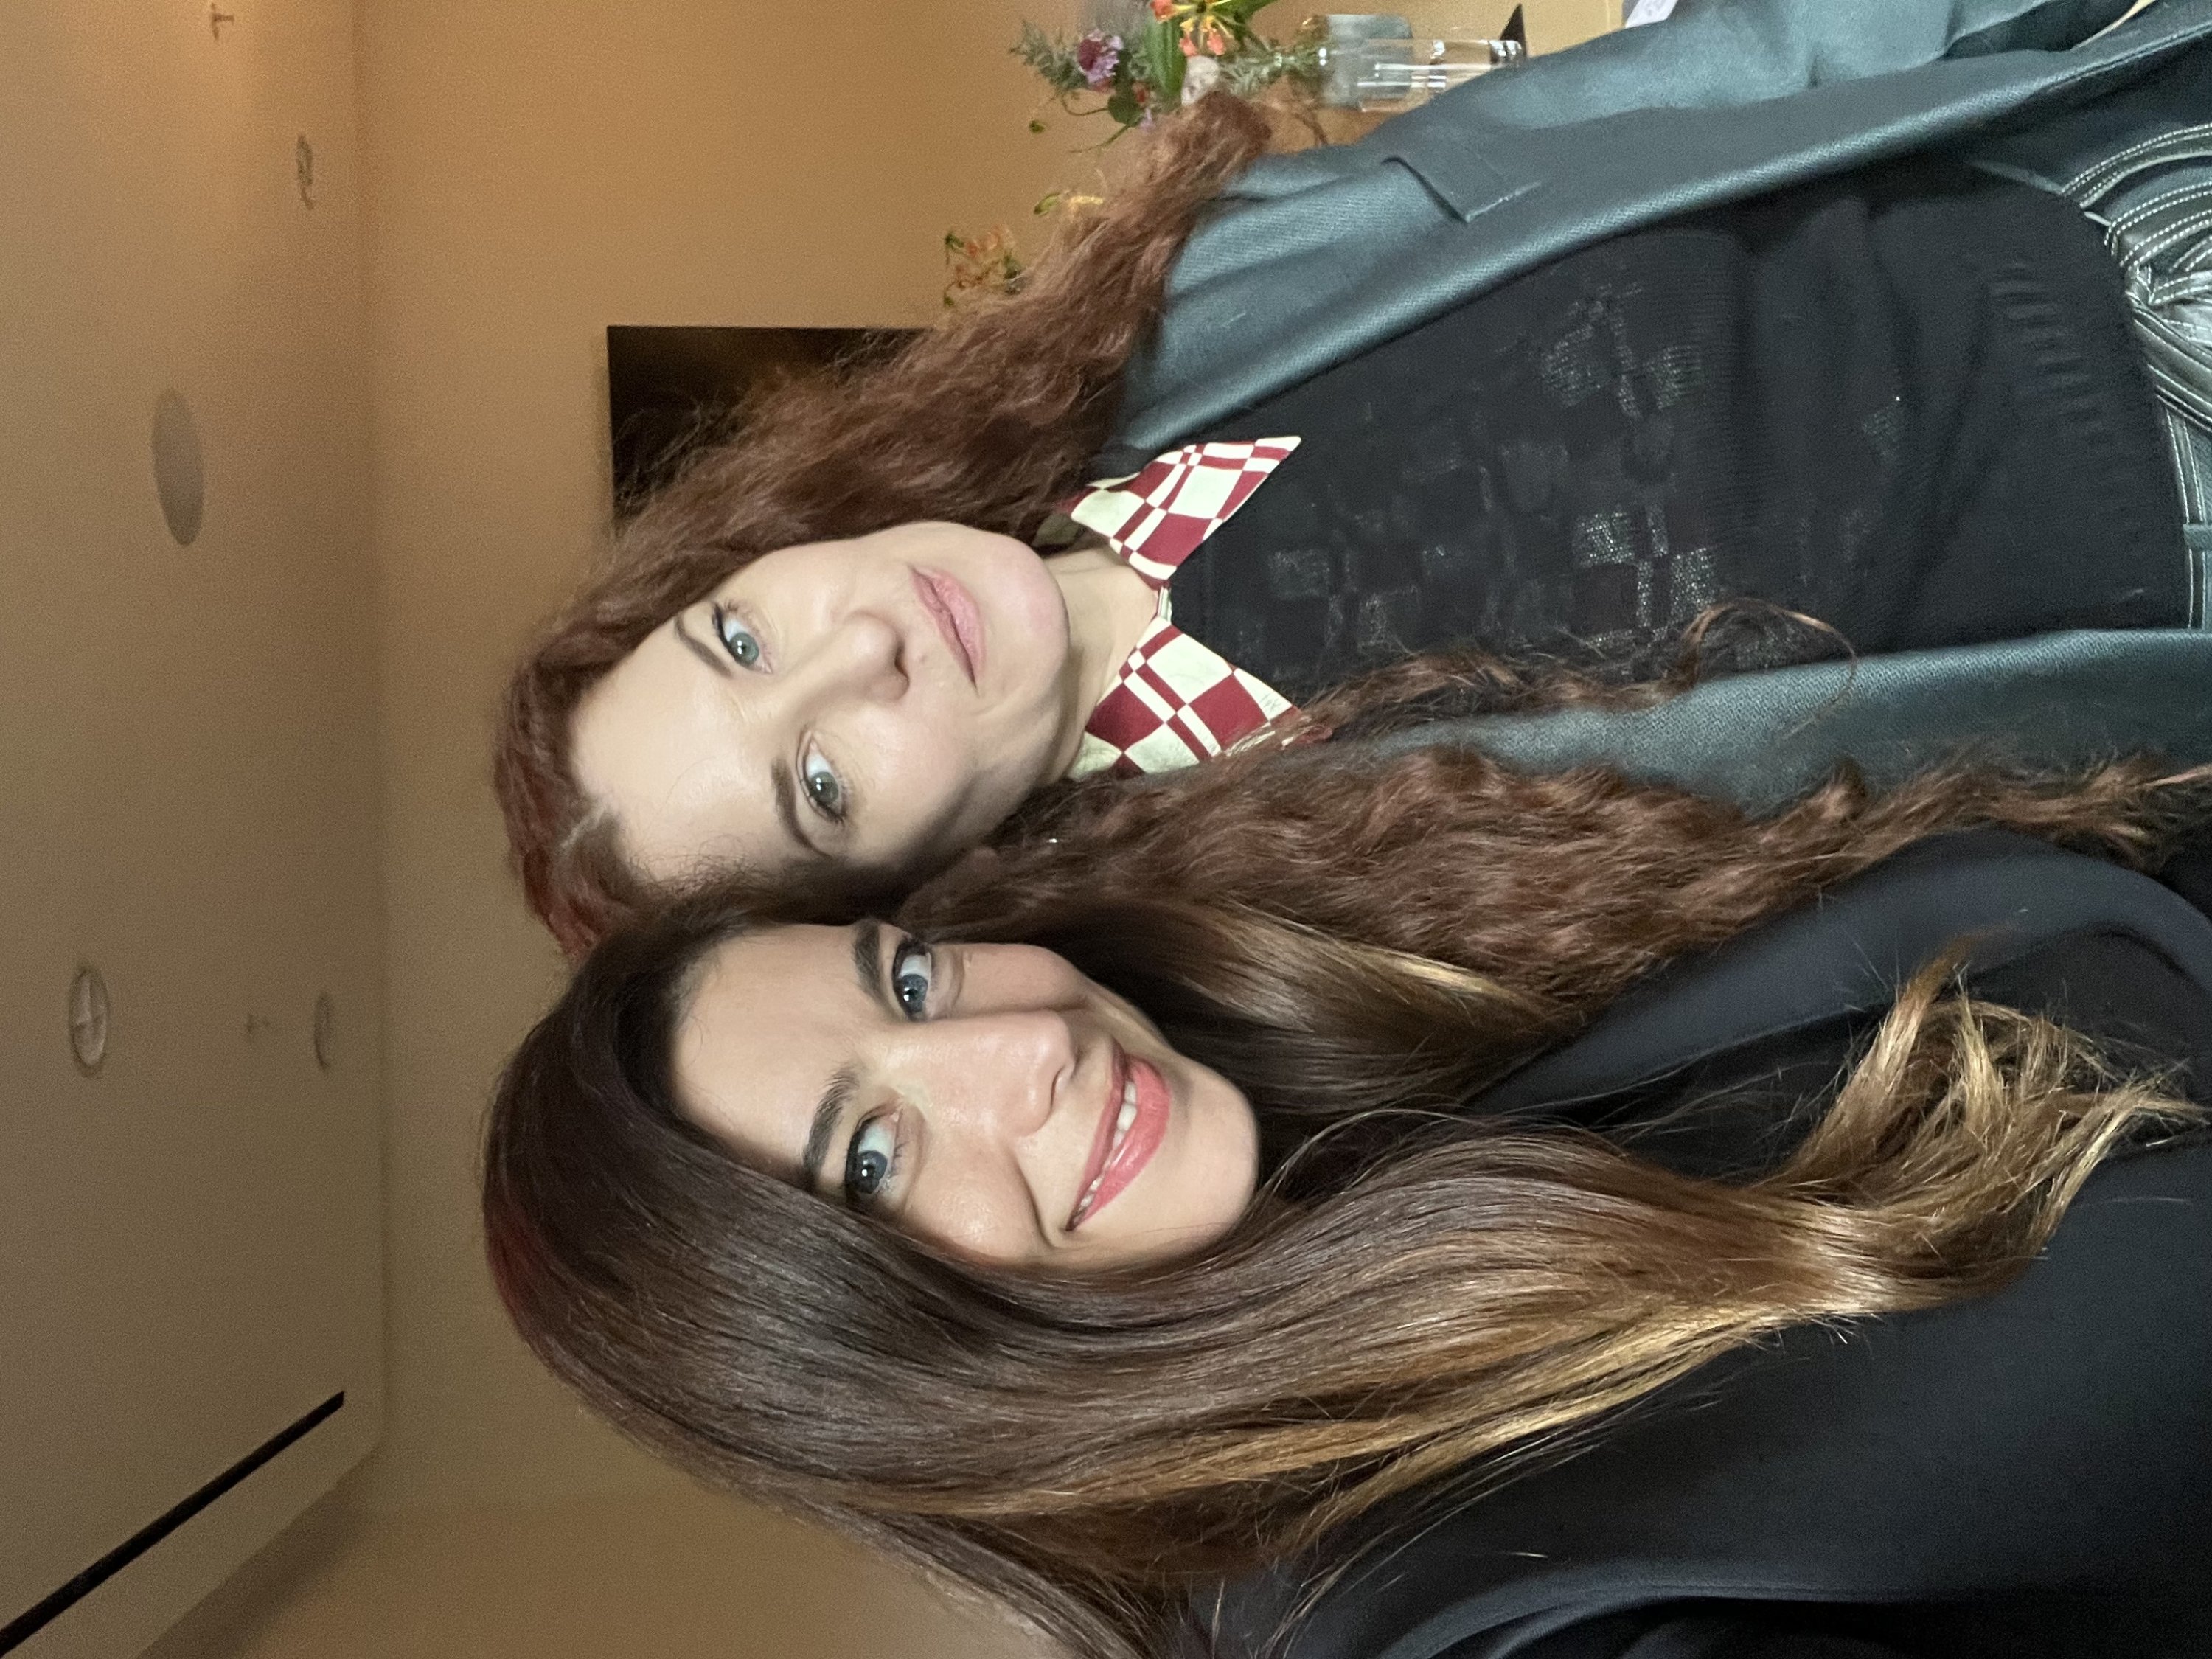 Funda Karayel (kiri) dan Emma Summerton saat wawancara, New York, AS, 17 November 2022. (Foto oleh Funda Karayel)